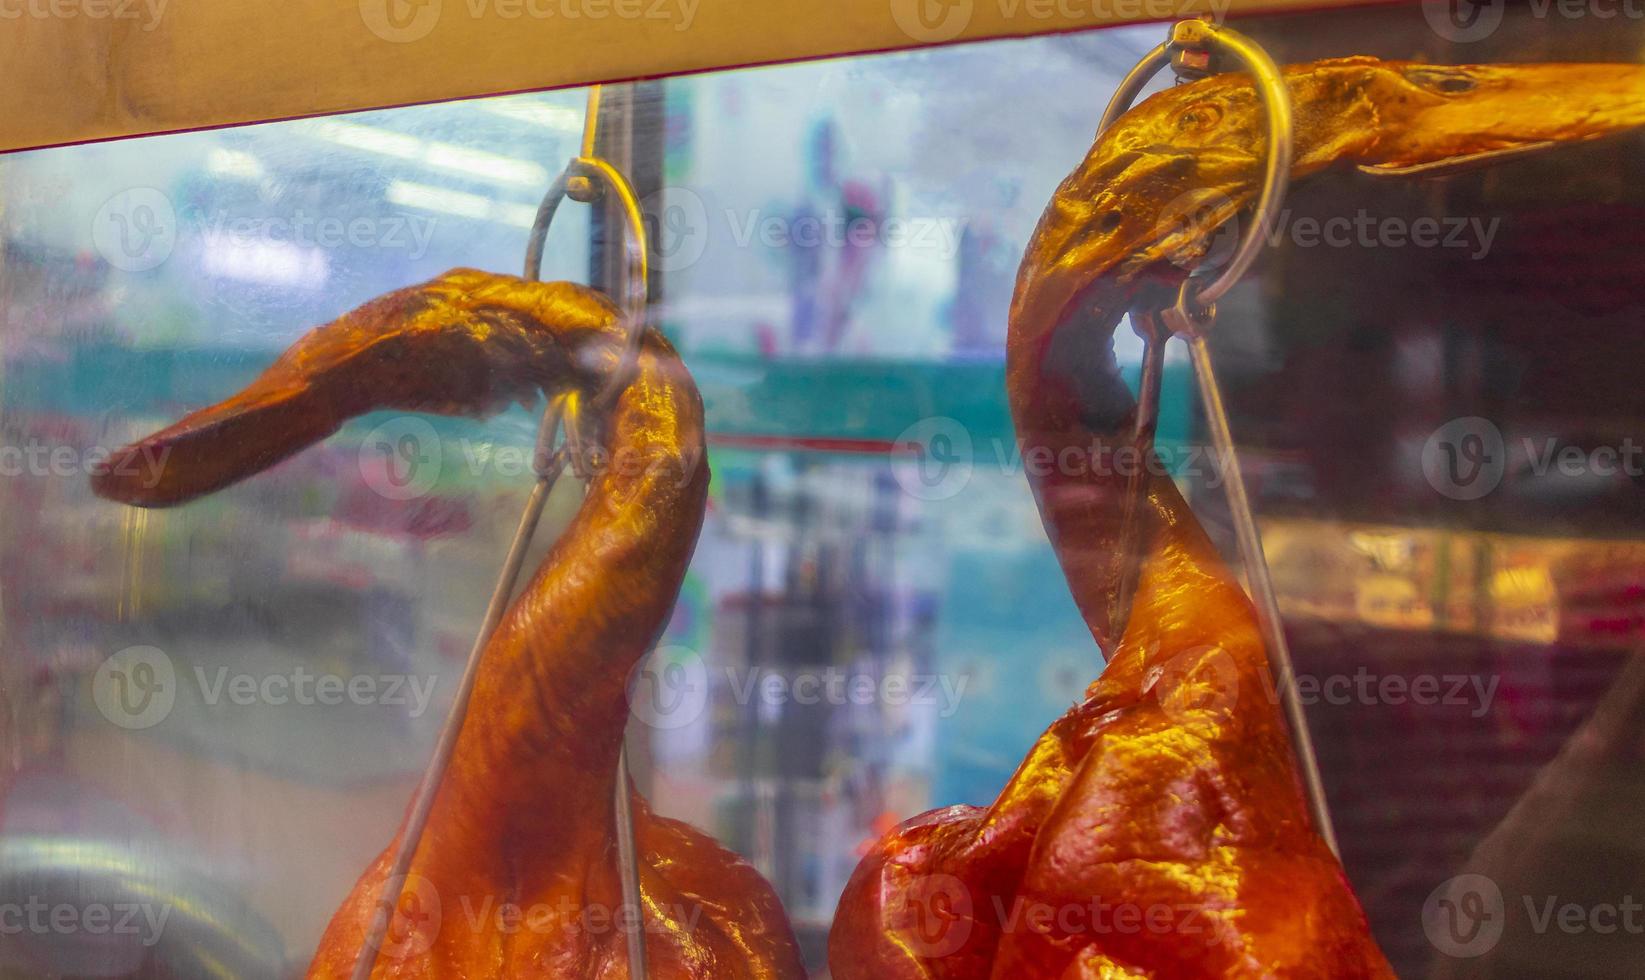 dégoûtant thai food canards poulet derrière la fenêtre china town bangkok. photo